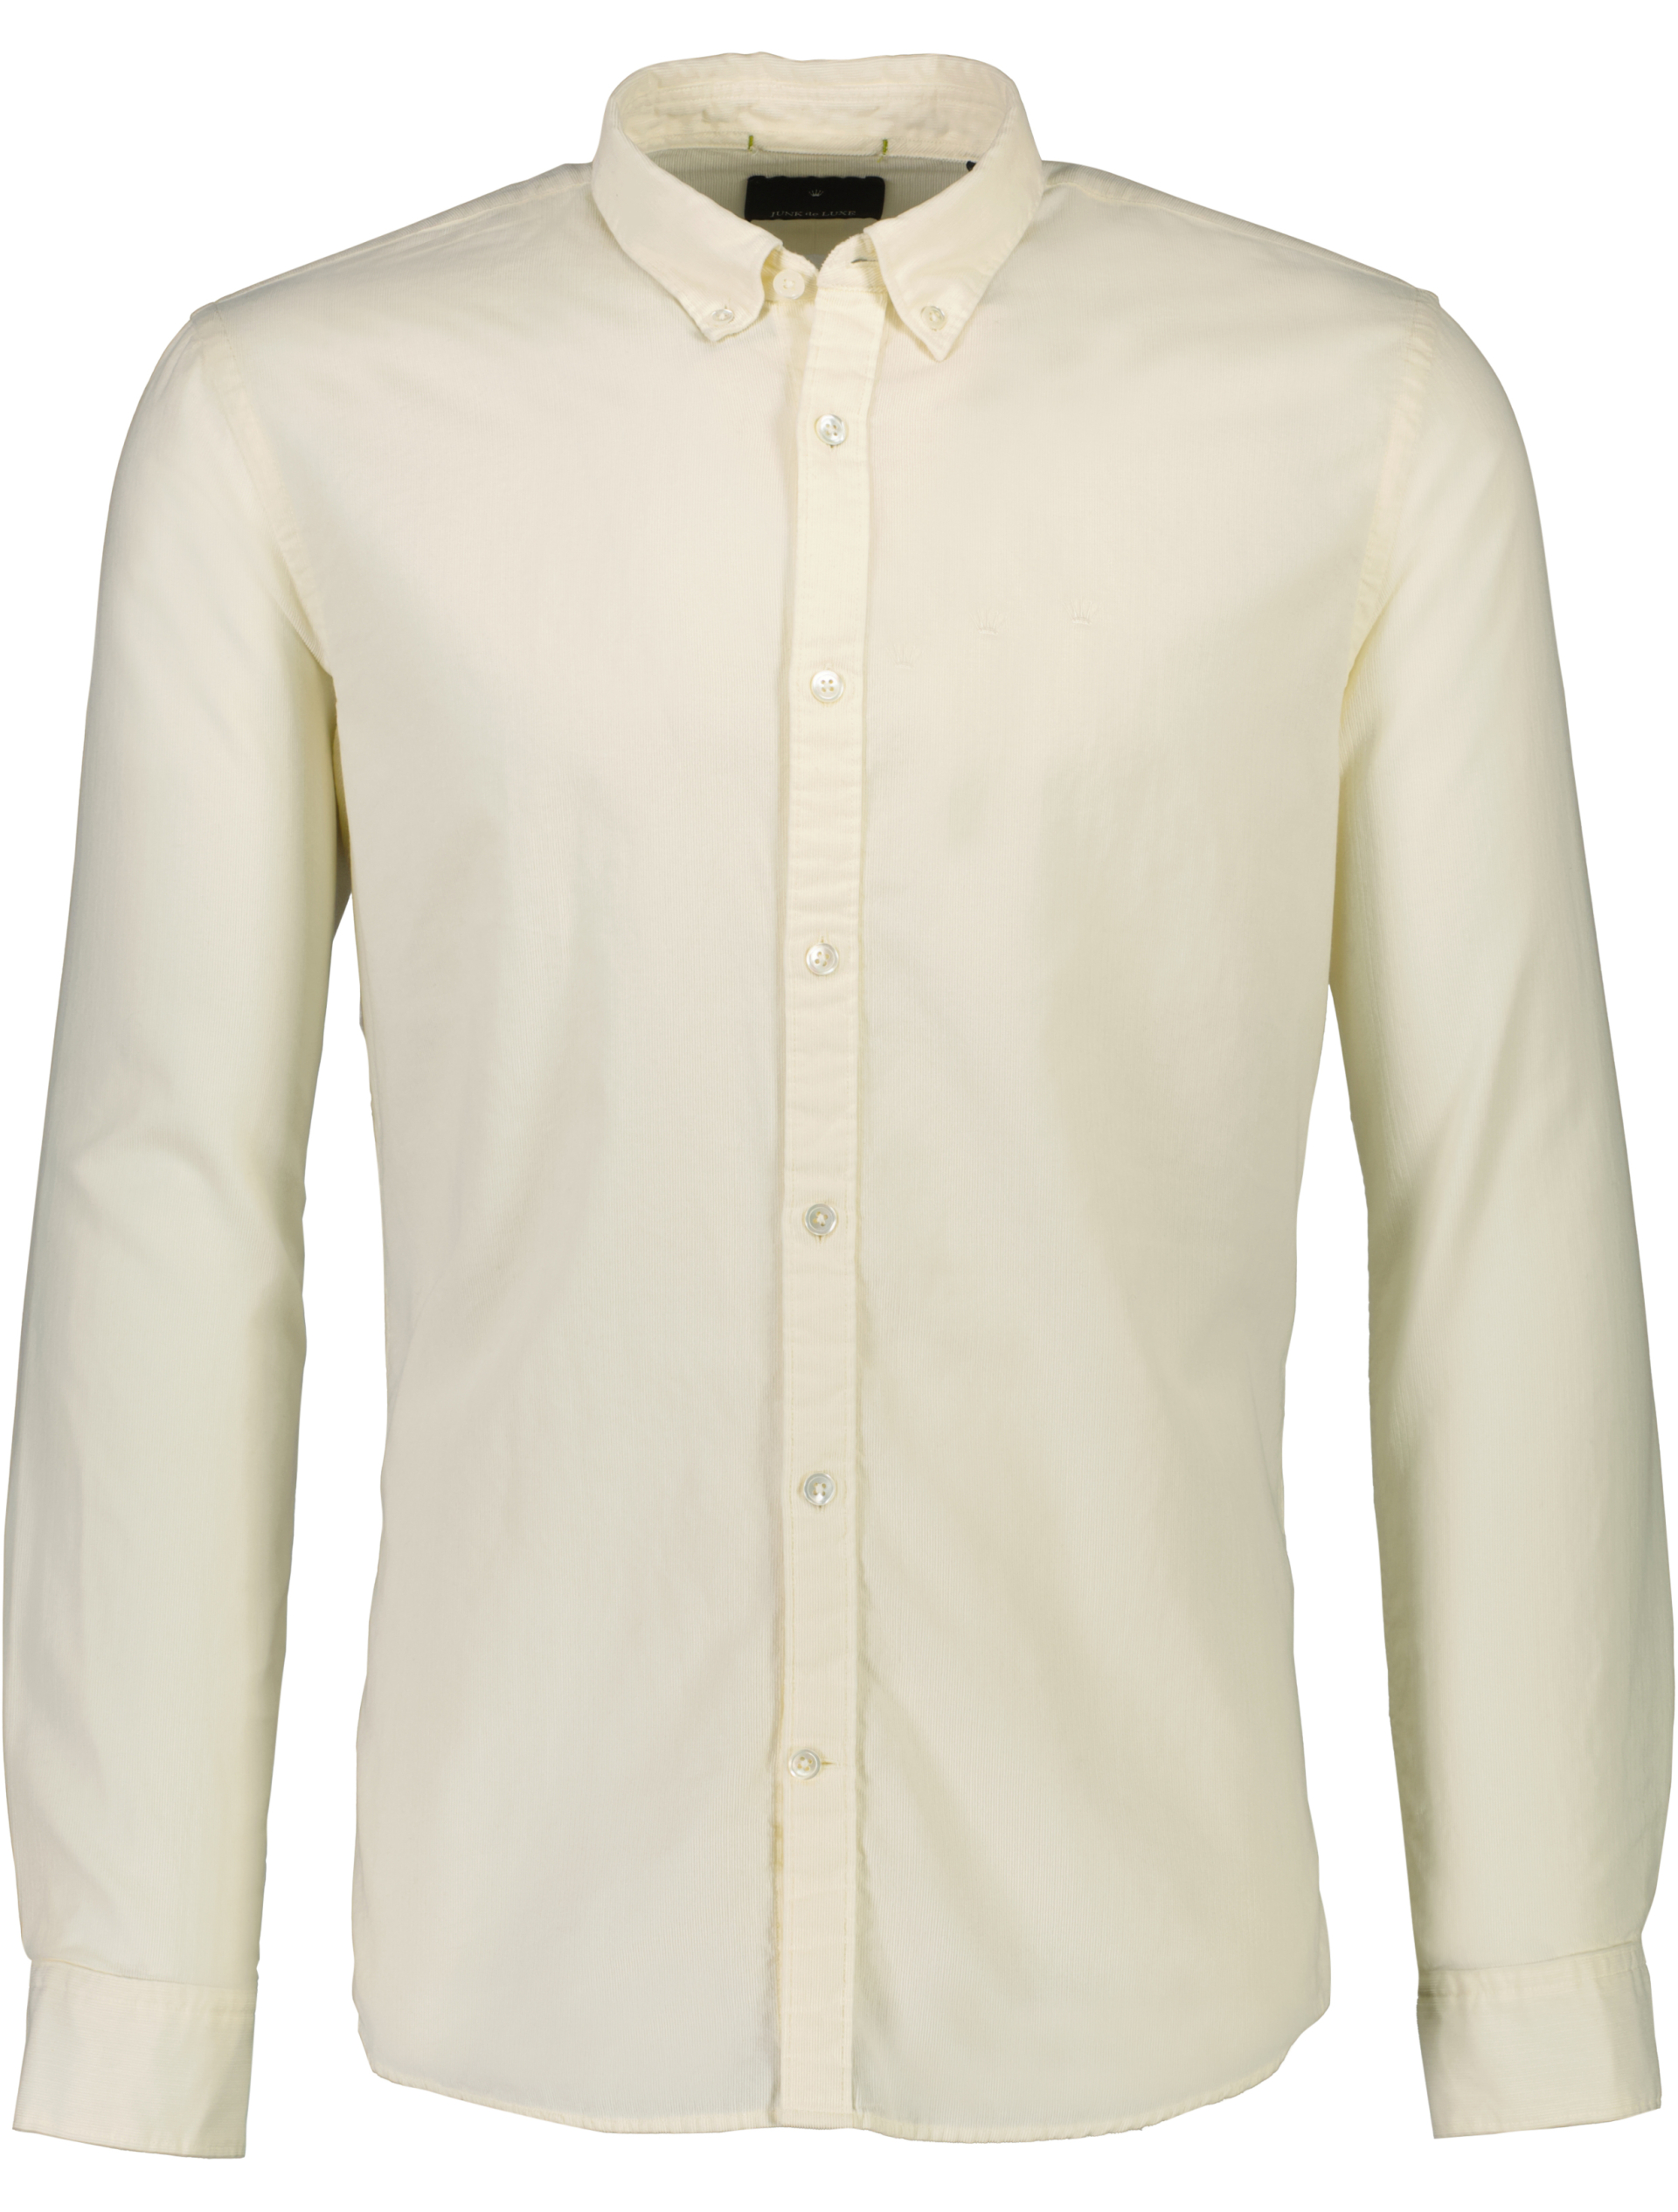 Junk de Luxe Fløjlsskjorte hvid / ivory white